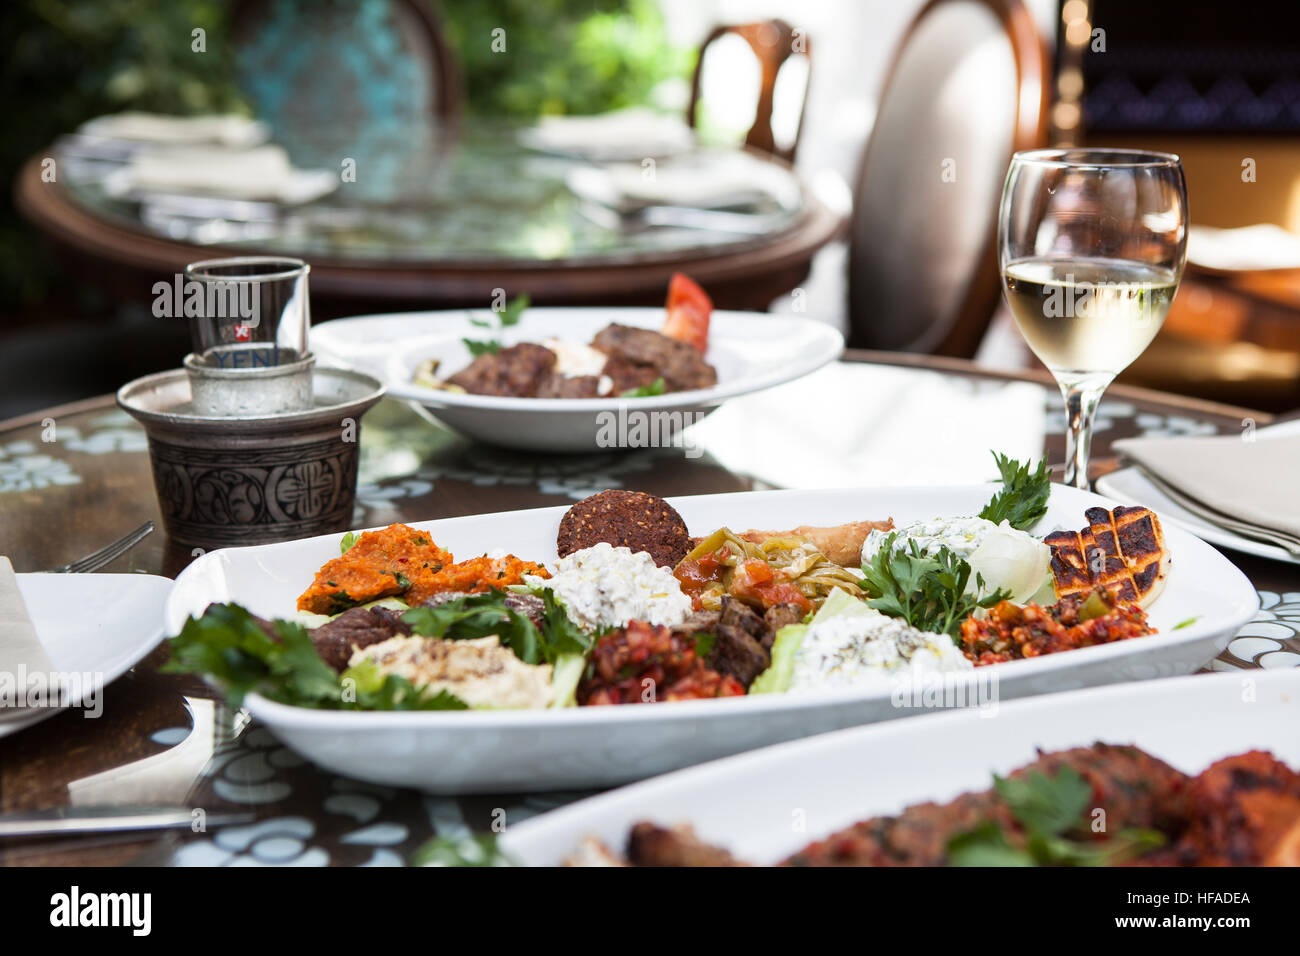 La nourriture turque sur une table dans un restaurant. Banque D'Images